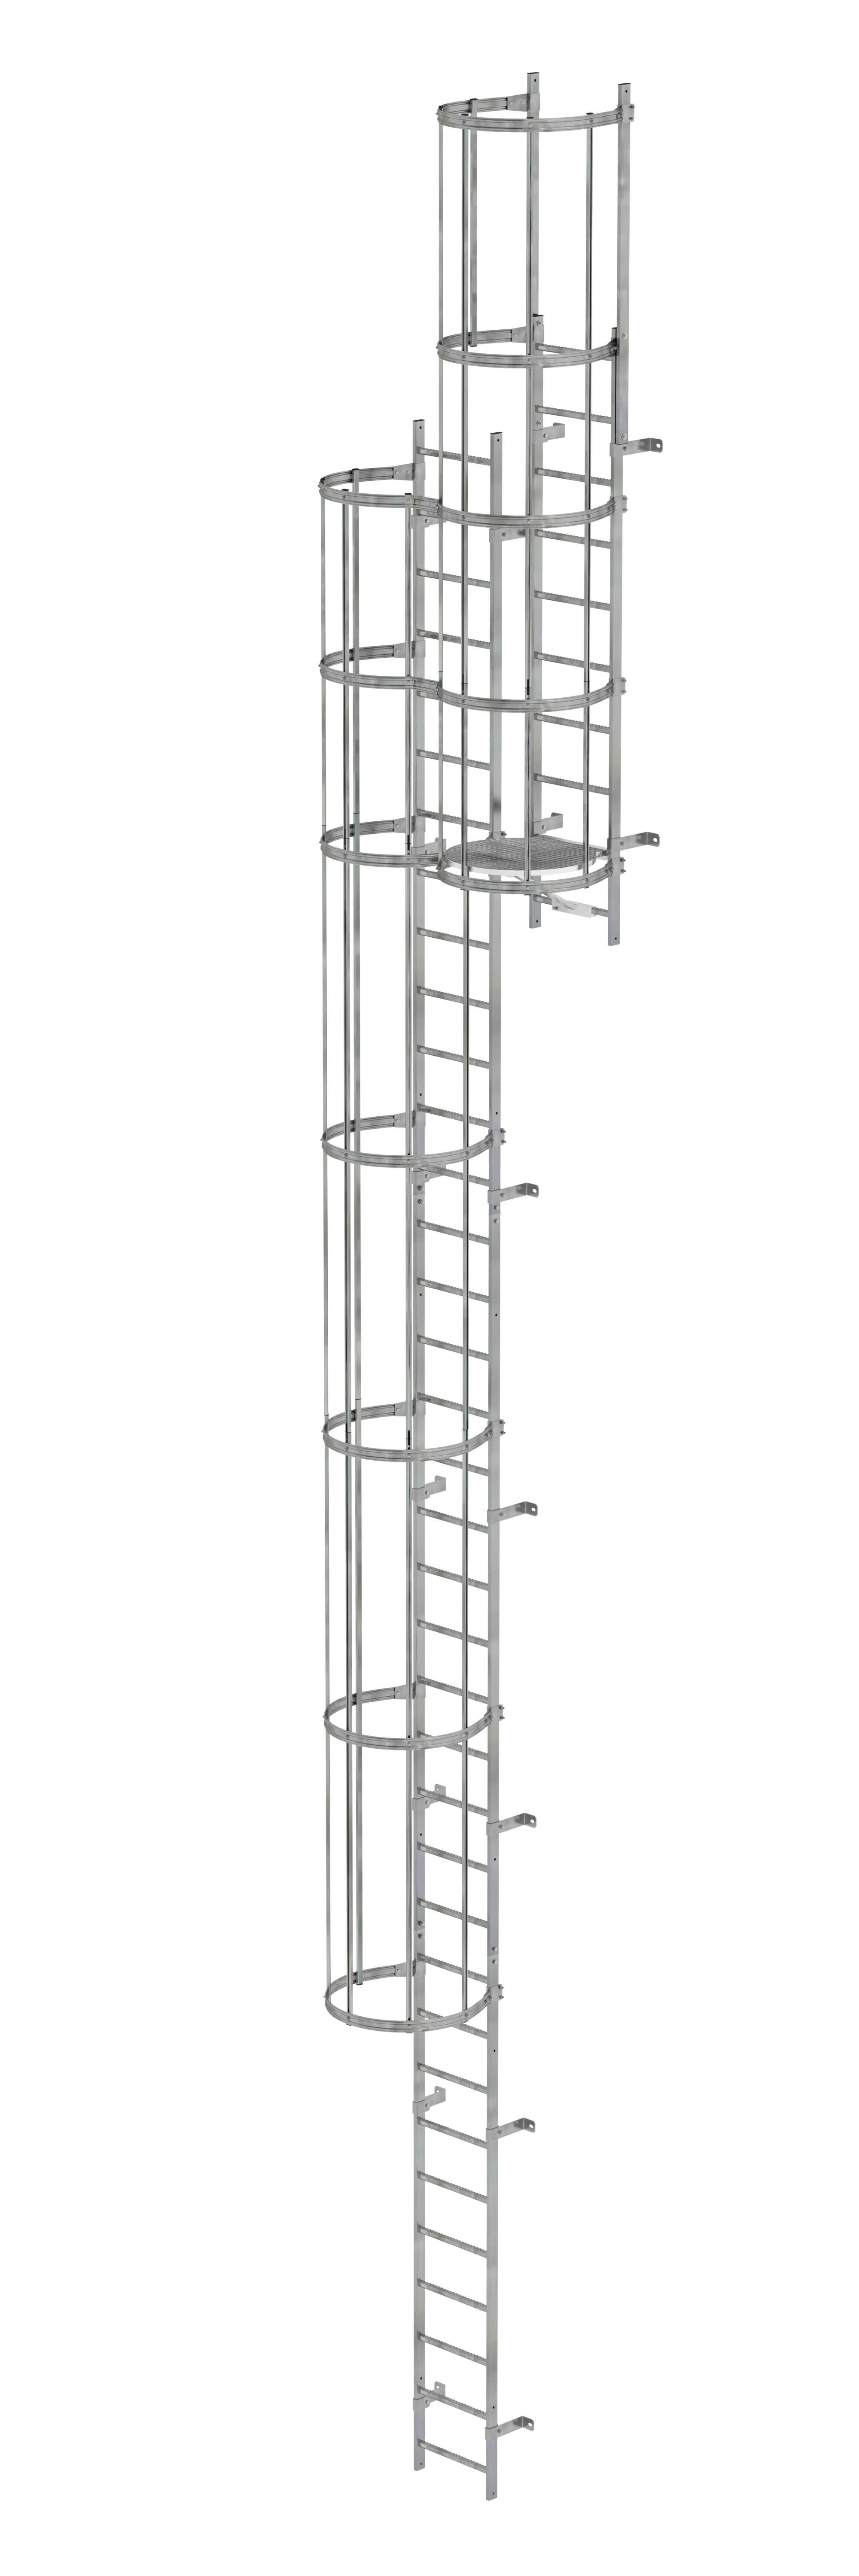 Mehrzügige Steigleiter mit Rückenschutz (Bau) Stahl verzinkt